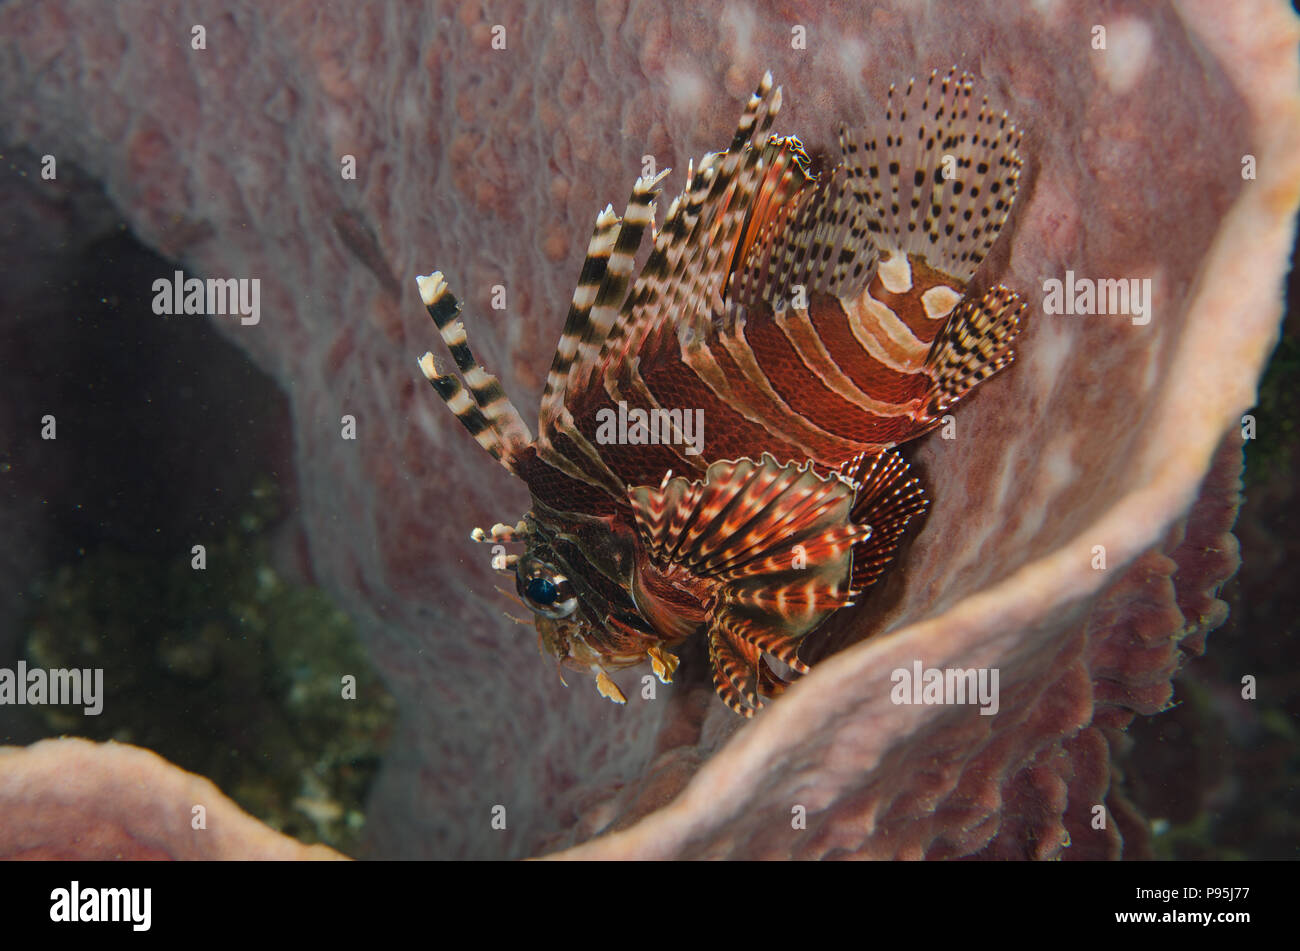 Zebra lionfish, Dendrochirus zebra, Scorpaenidae, Anilao, Philippines, Asia Stock Photo